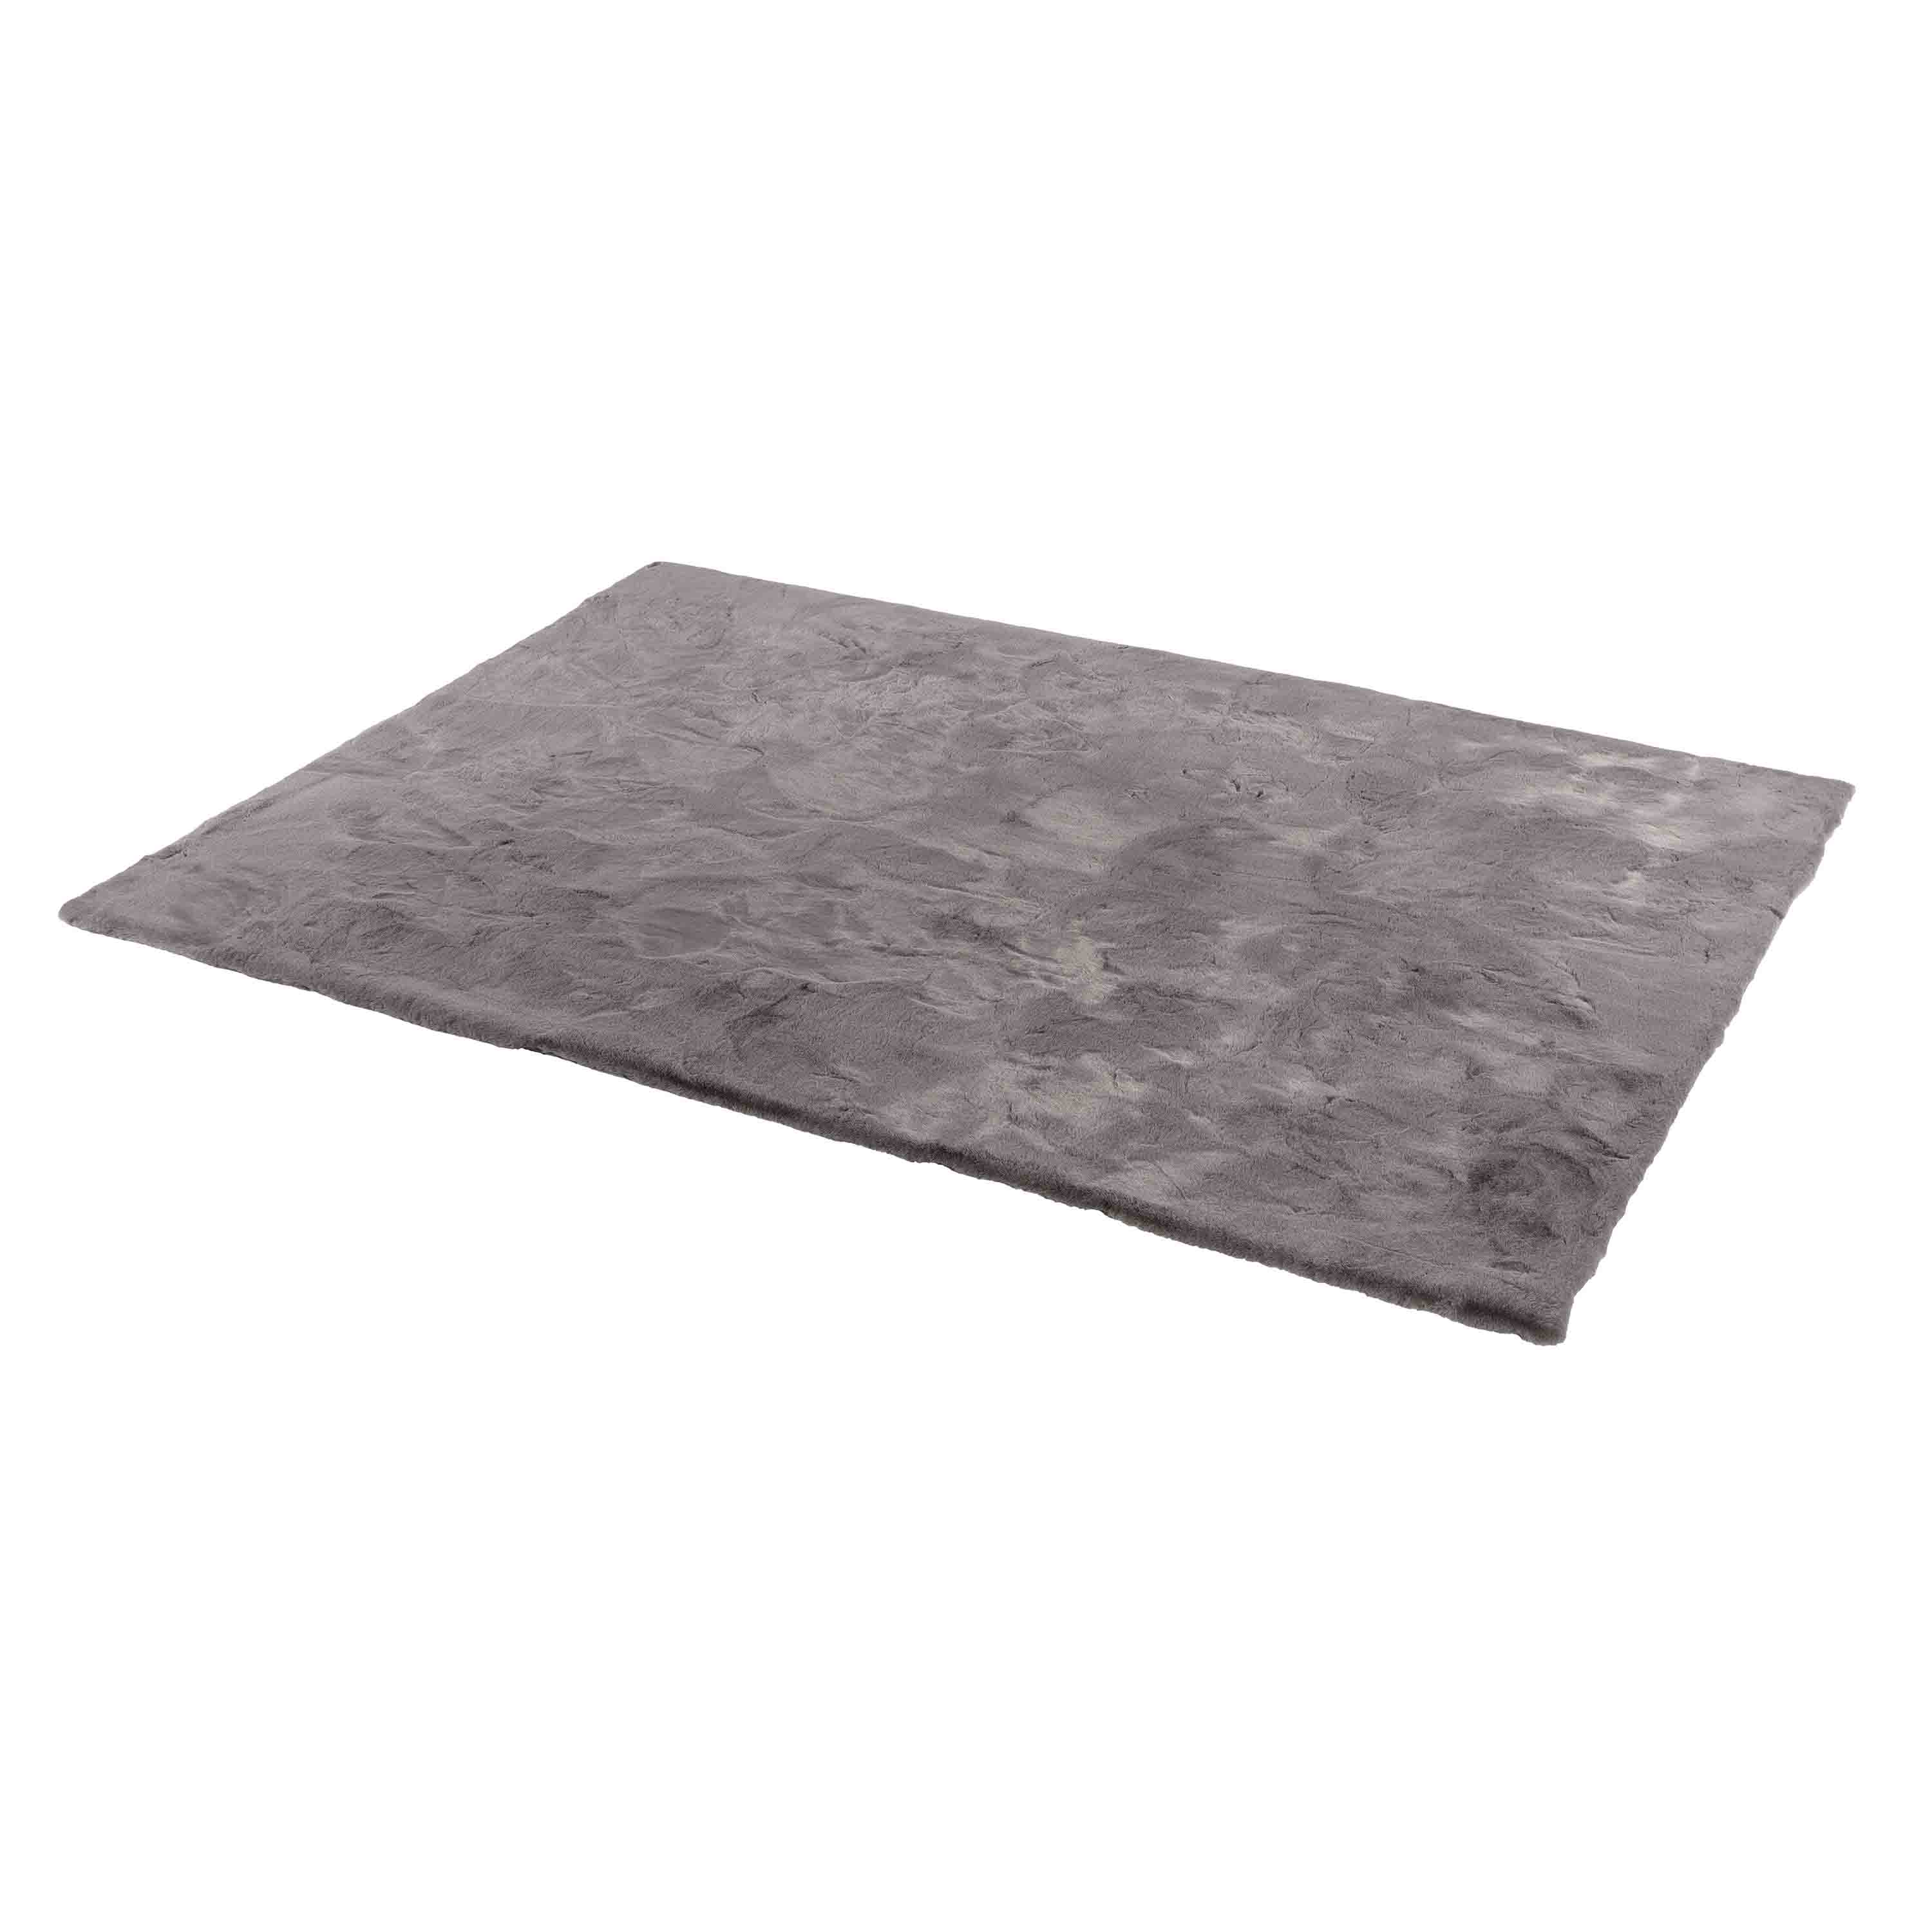 Schöner Wohnen Kollektion Teppich Tender 80x150 cm Grau